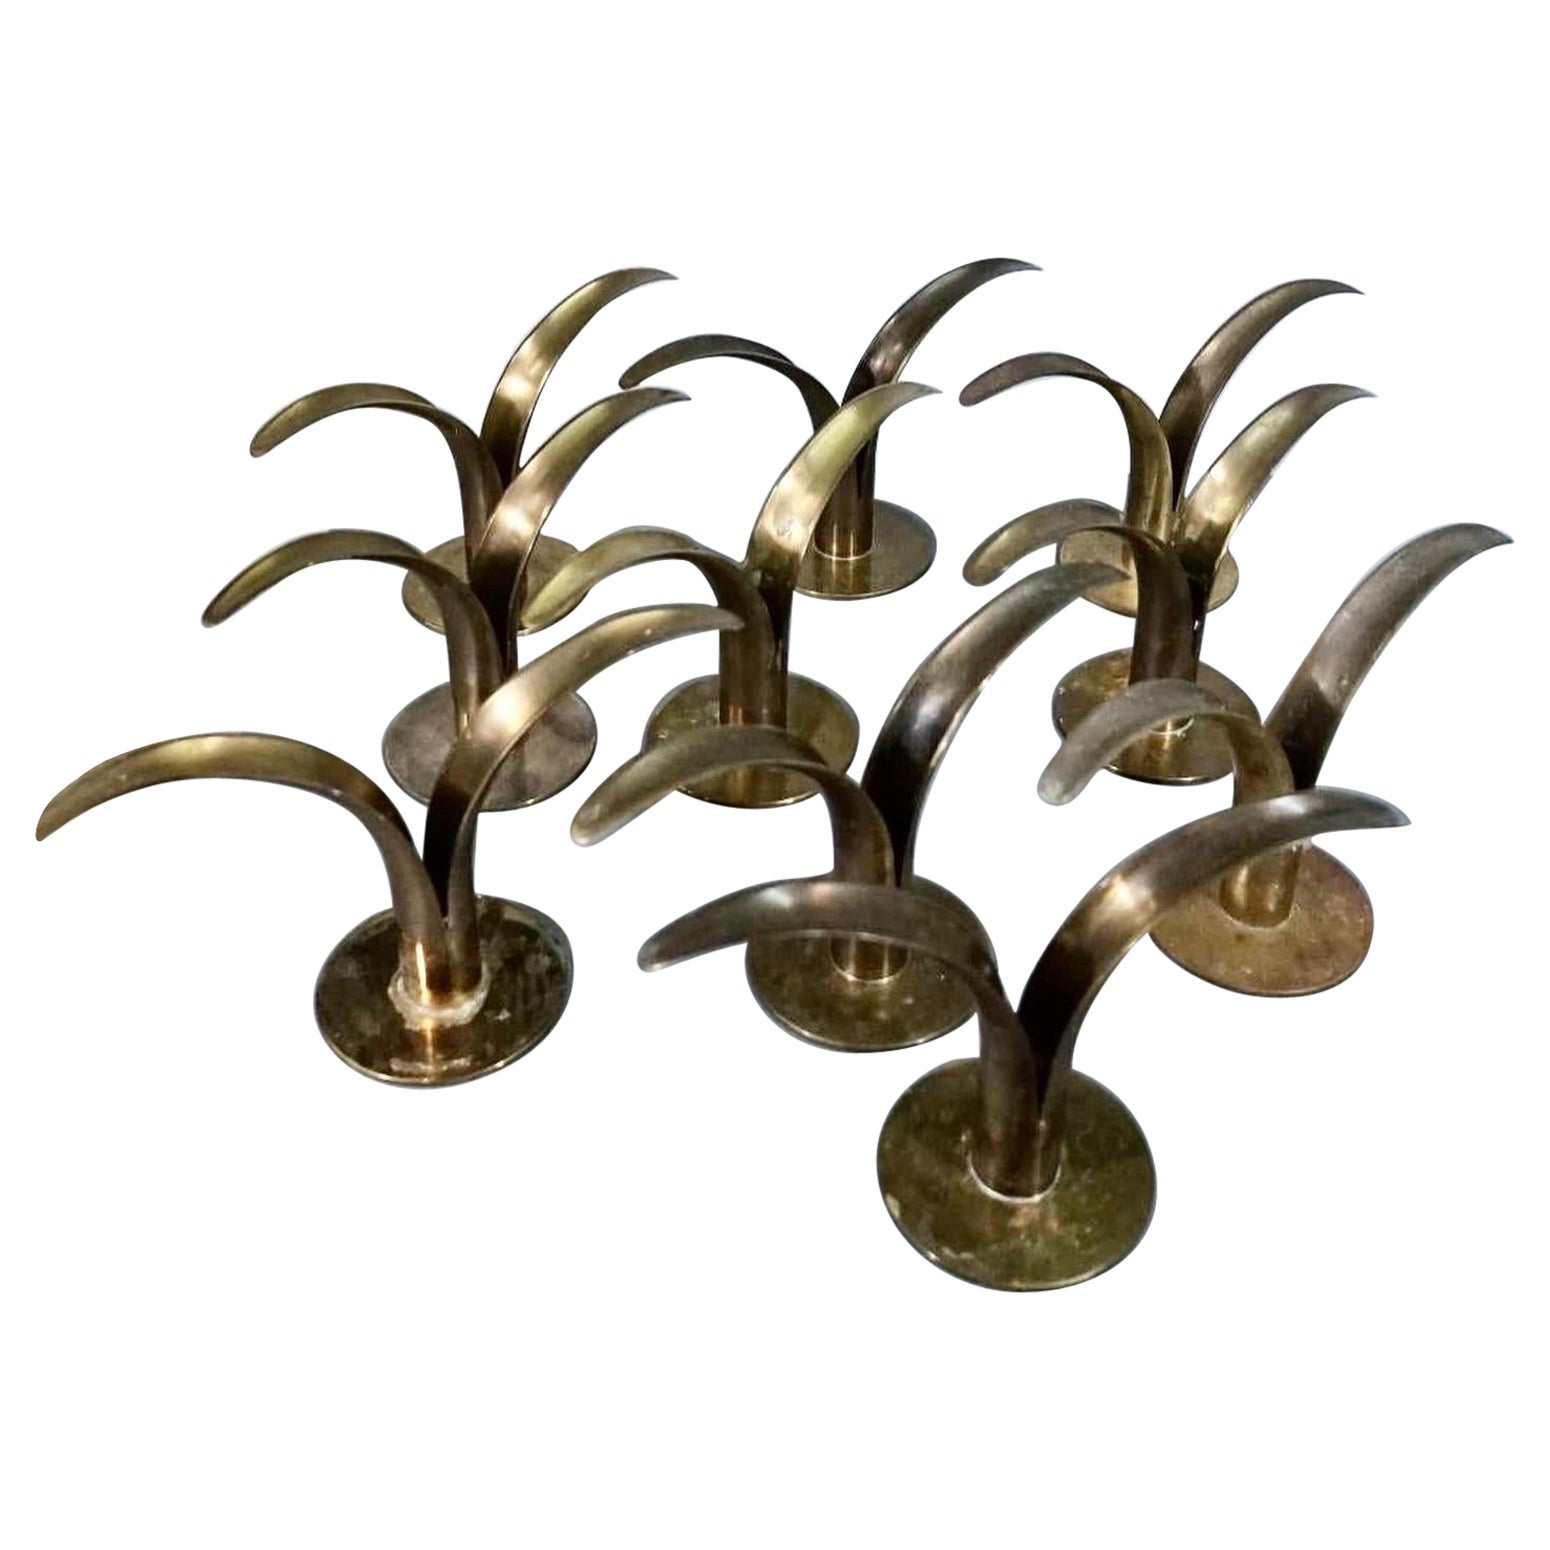 Set of 10 lily candle holders designed by Ivar Ålenius Björk for Ystad Metal For Sale